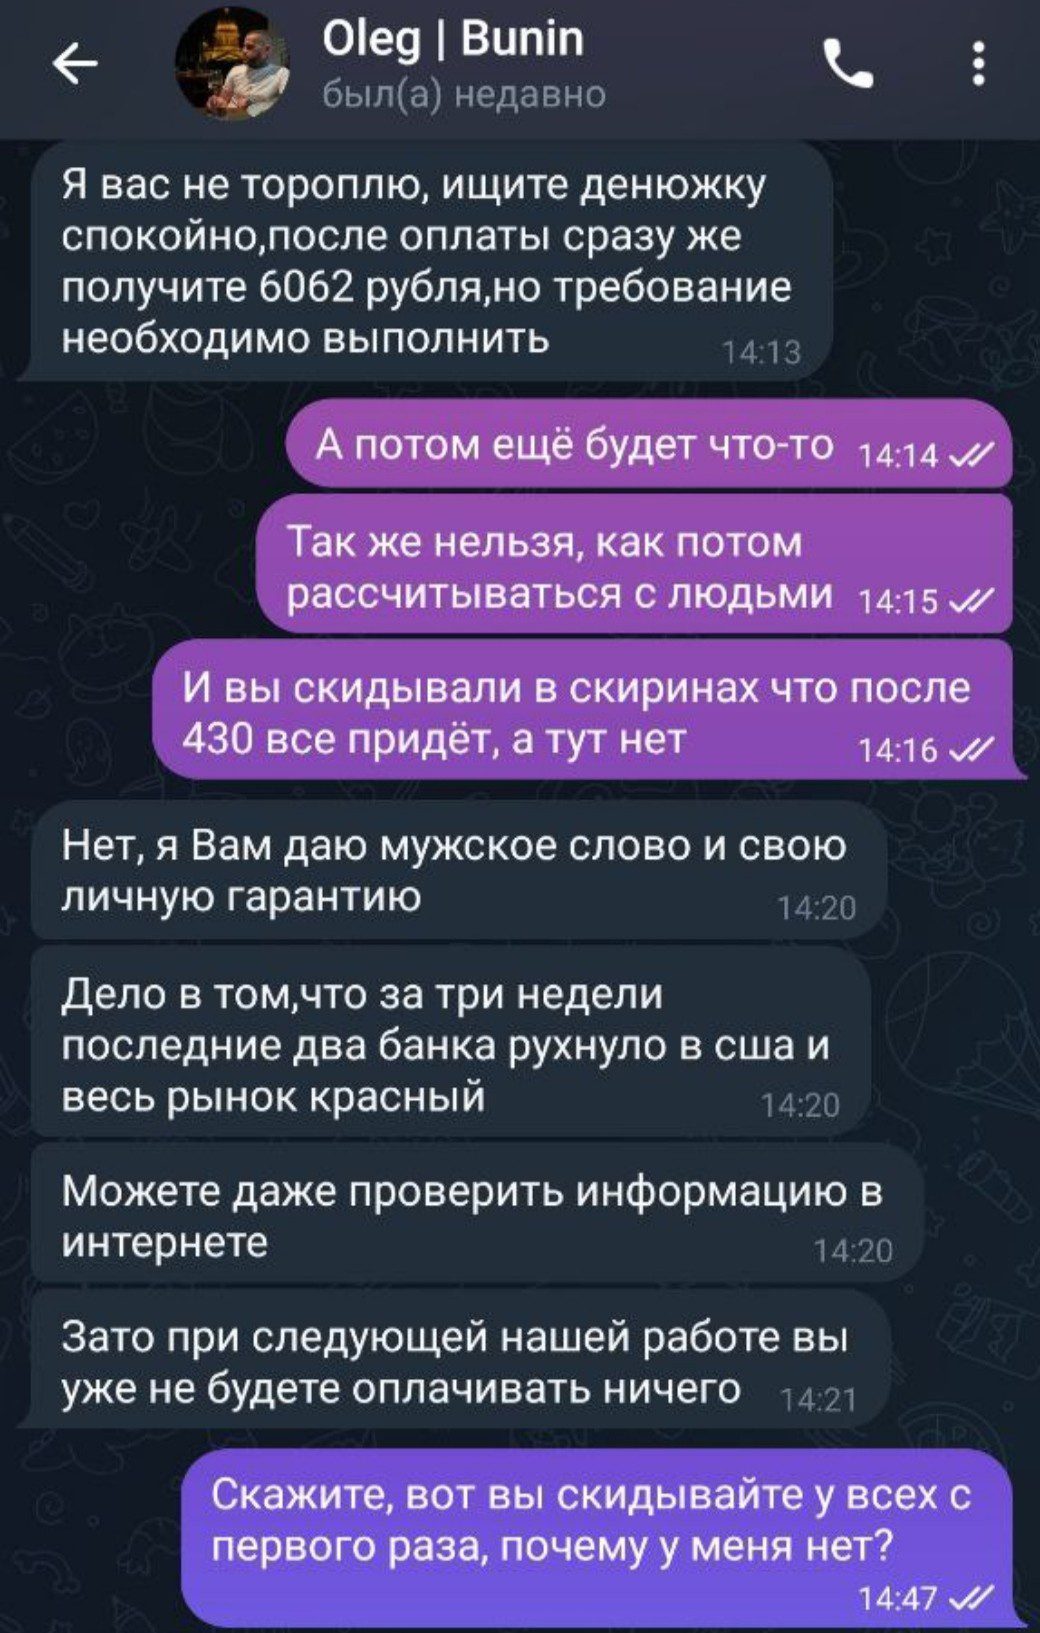 Олег Бунин телеграмм отзывы